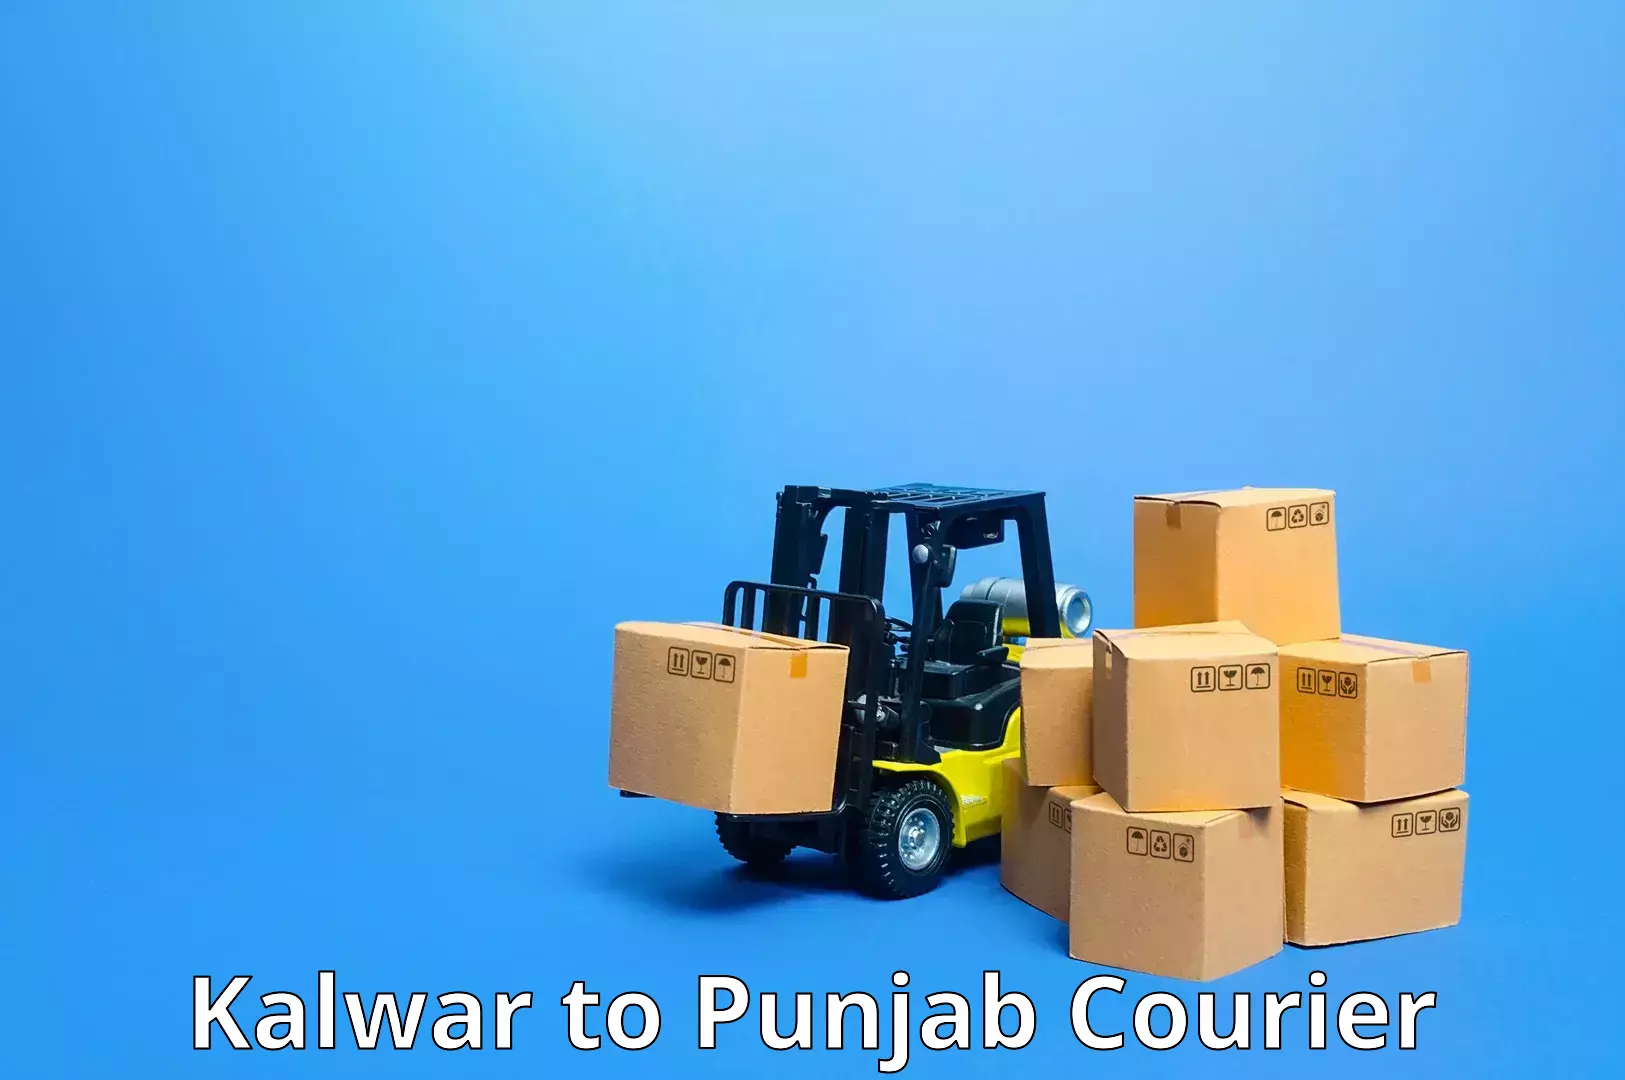 Courier service efficiency Kalwar to Sirhind Fatehgarh